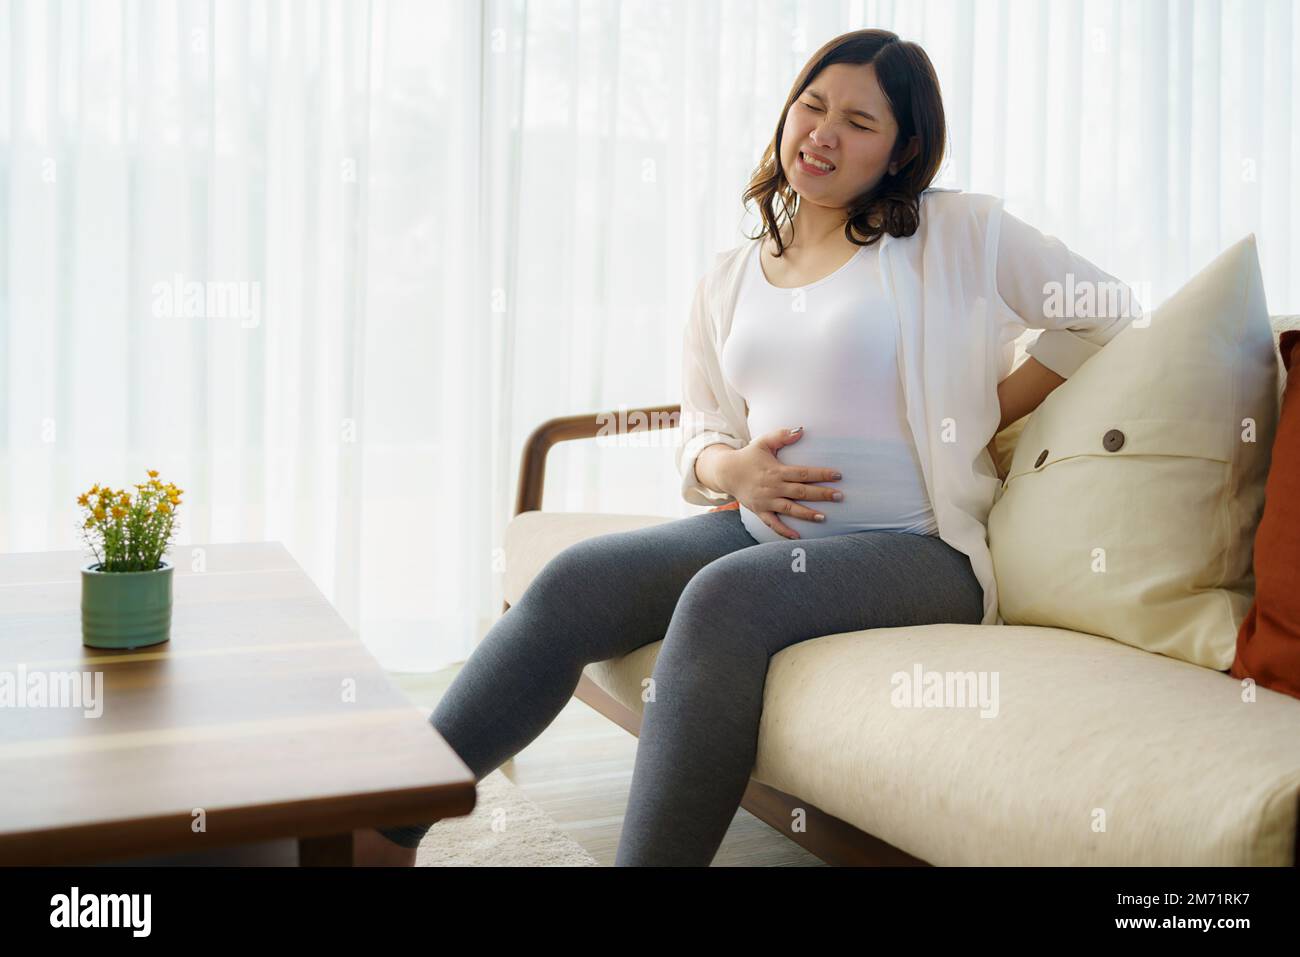 Femme enceinte asiatique souffrant de mal de dos, assise sur un canapé, tenant le ventre, se touchant le dos. Femme enceinte fatiguée de surpoids, ayant un prob santé Banque D'Images